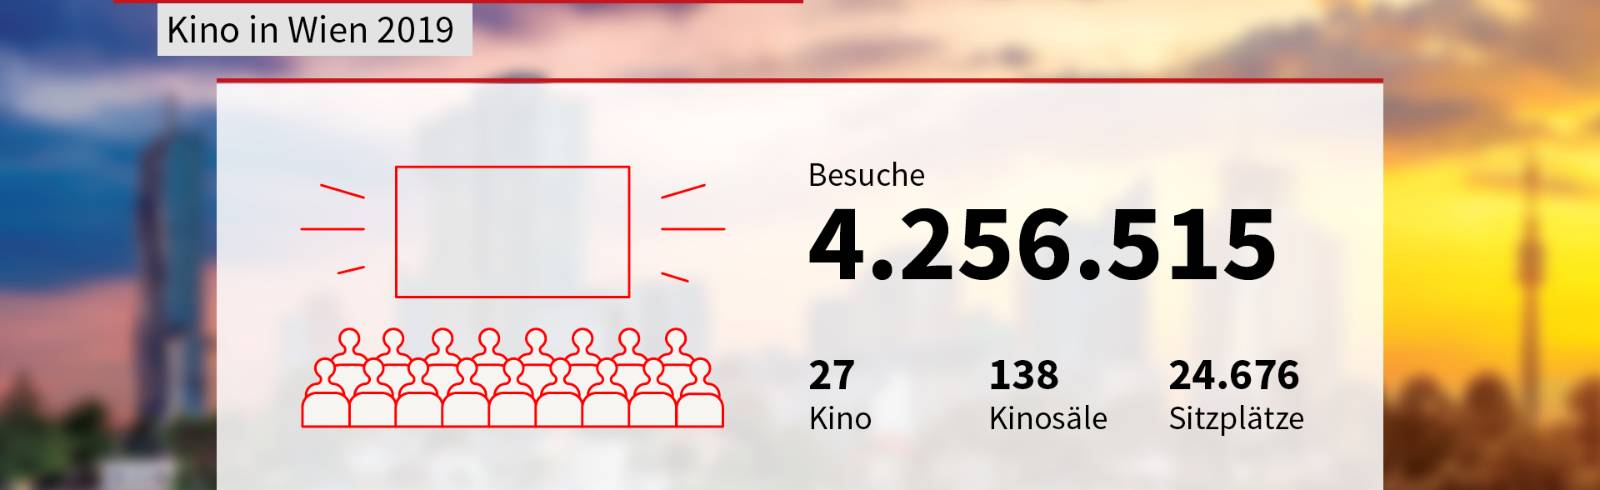 Wien in Zahlen: Kultureinrichtungen & Besucher